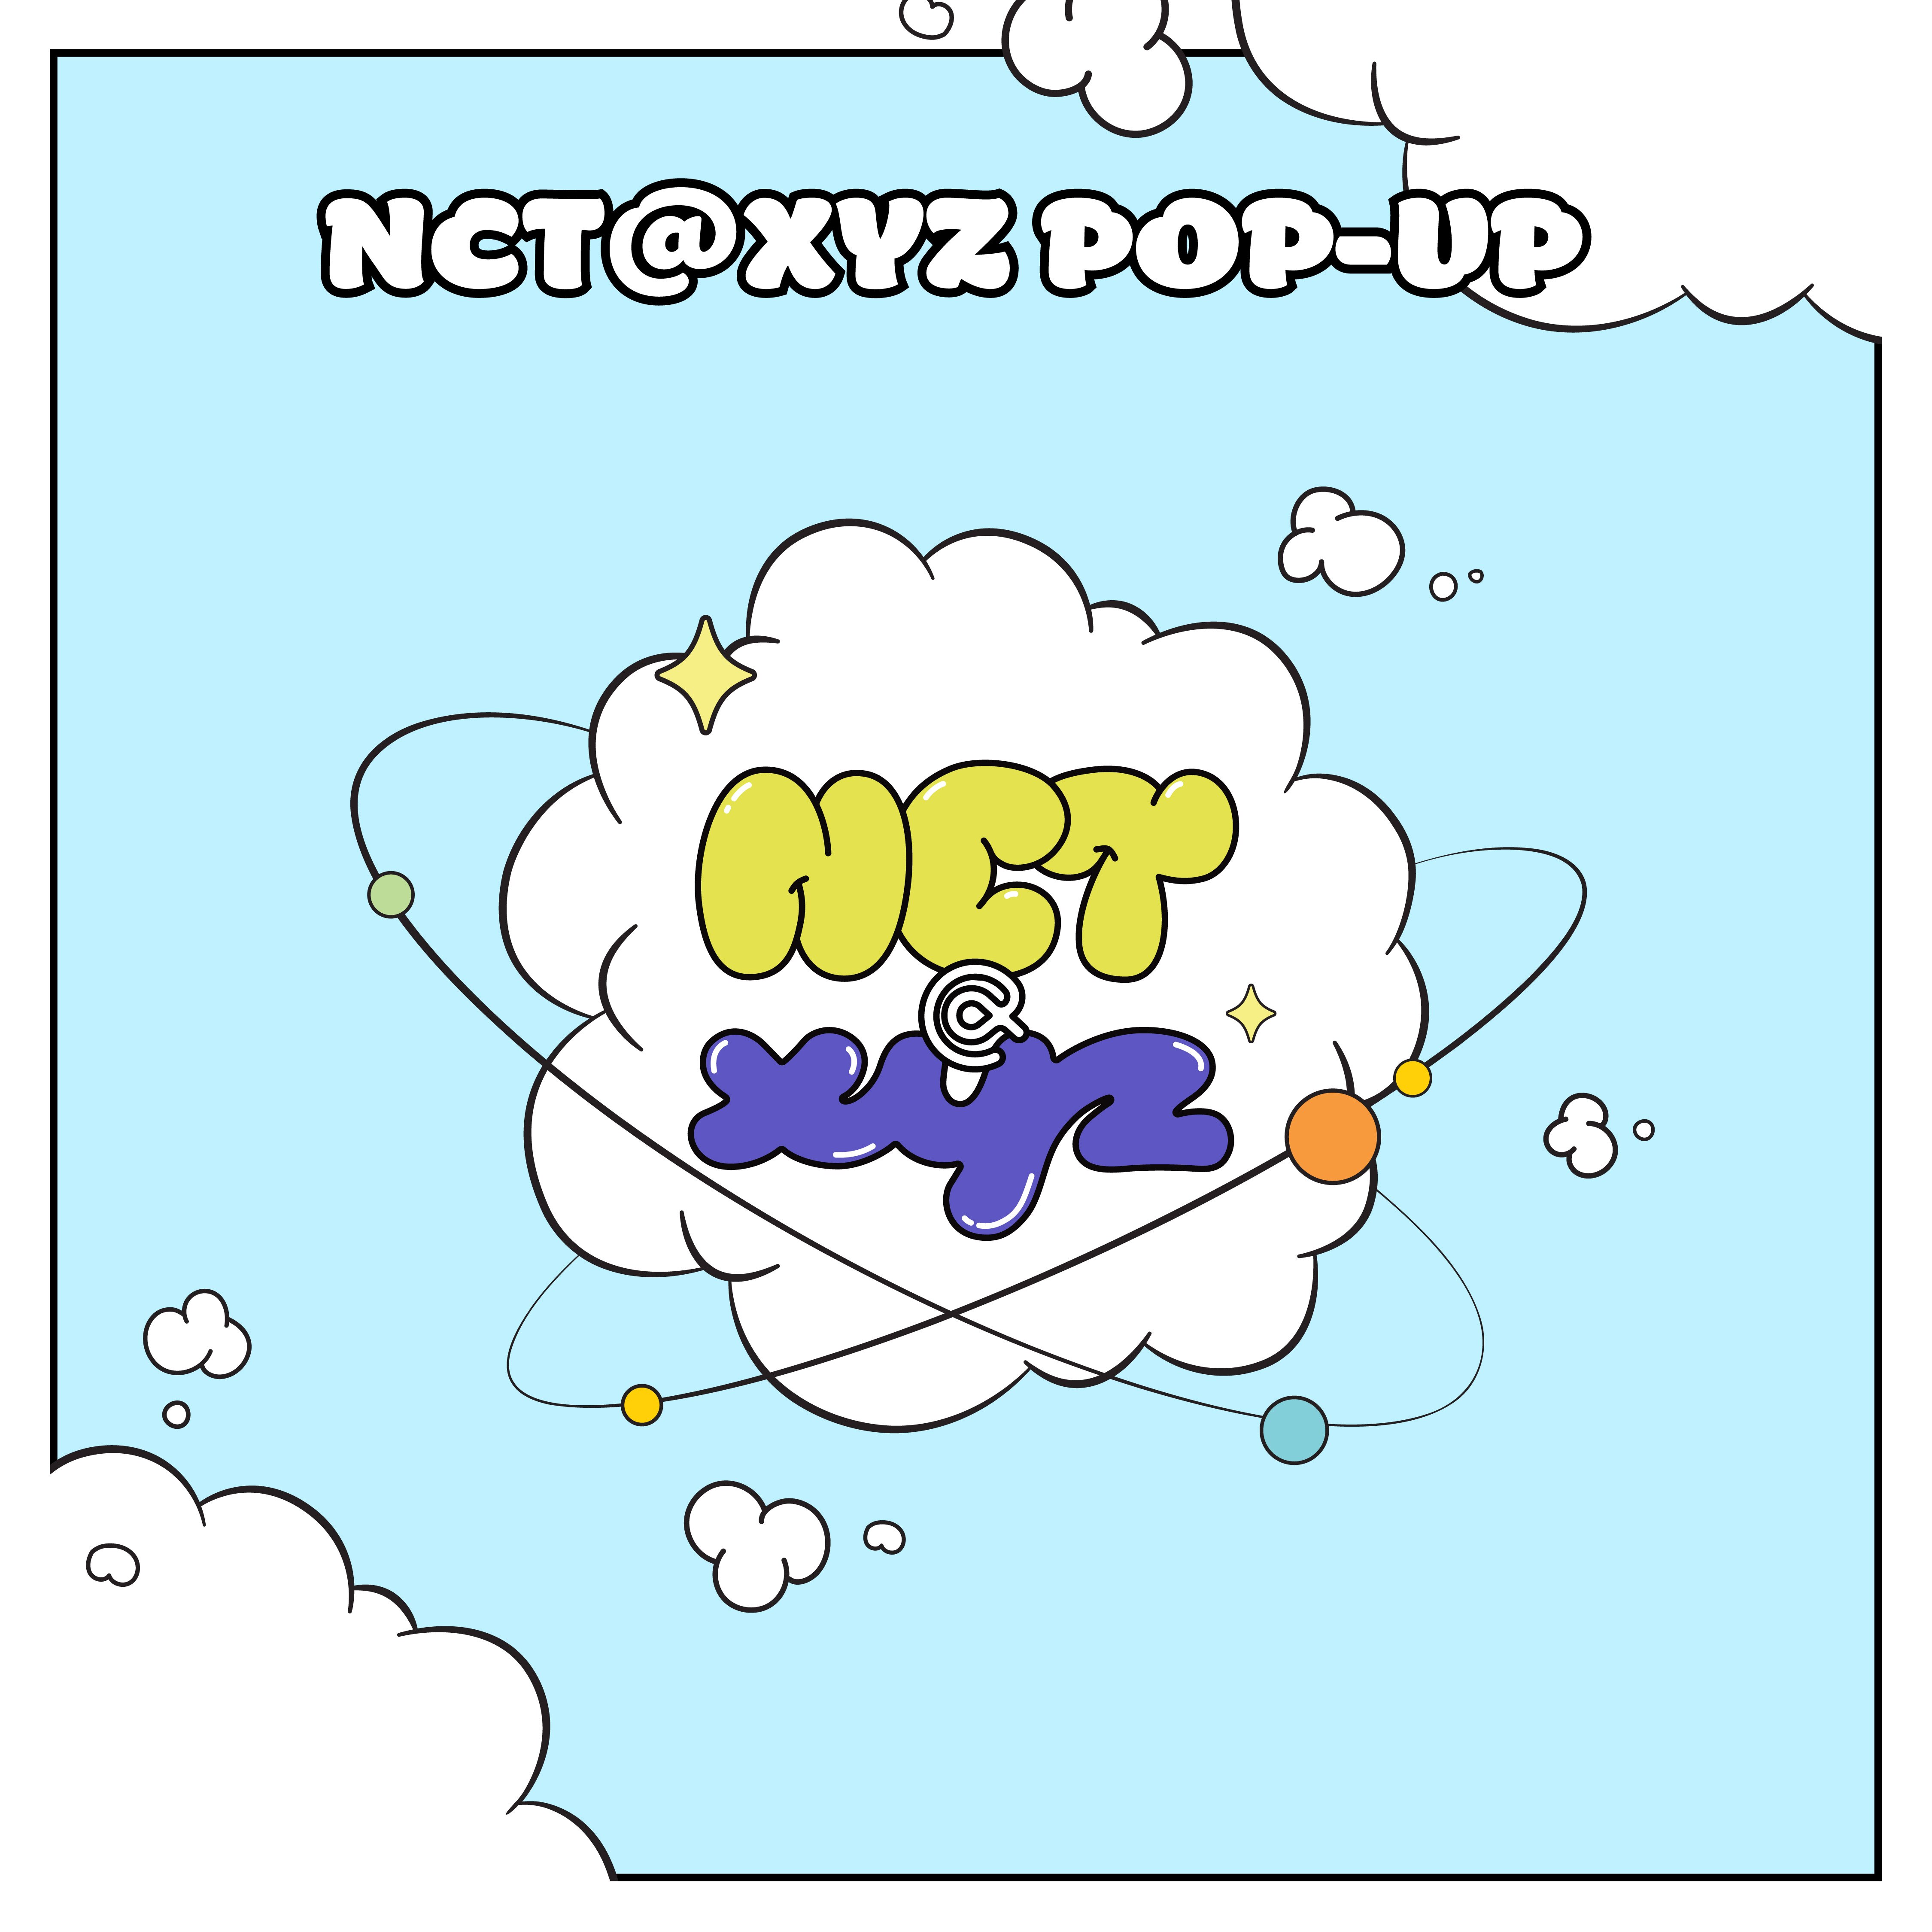 NEWS | NCT Website